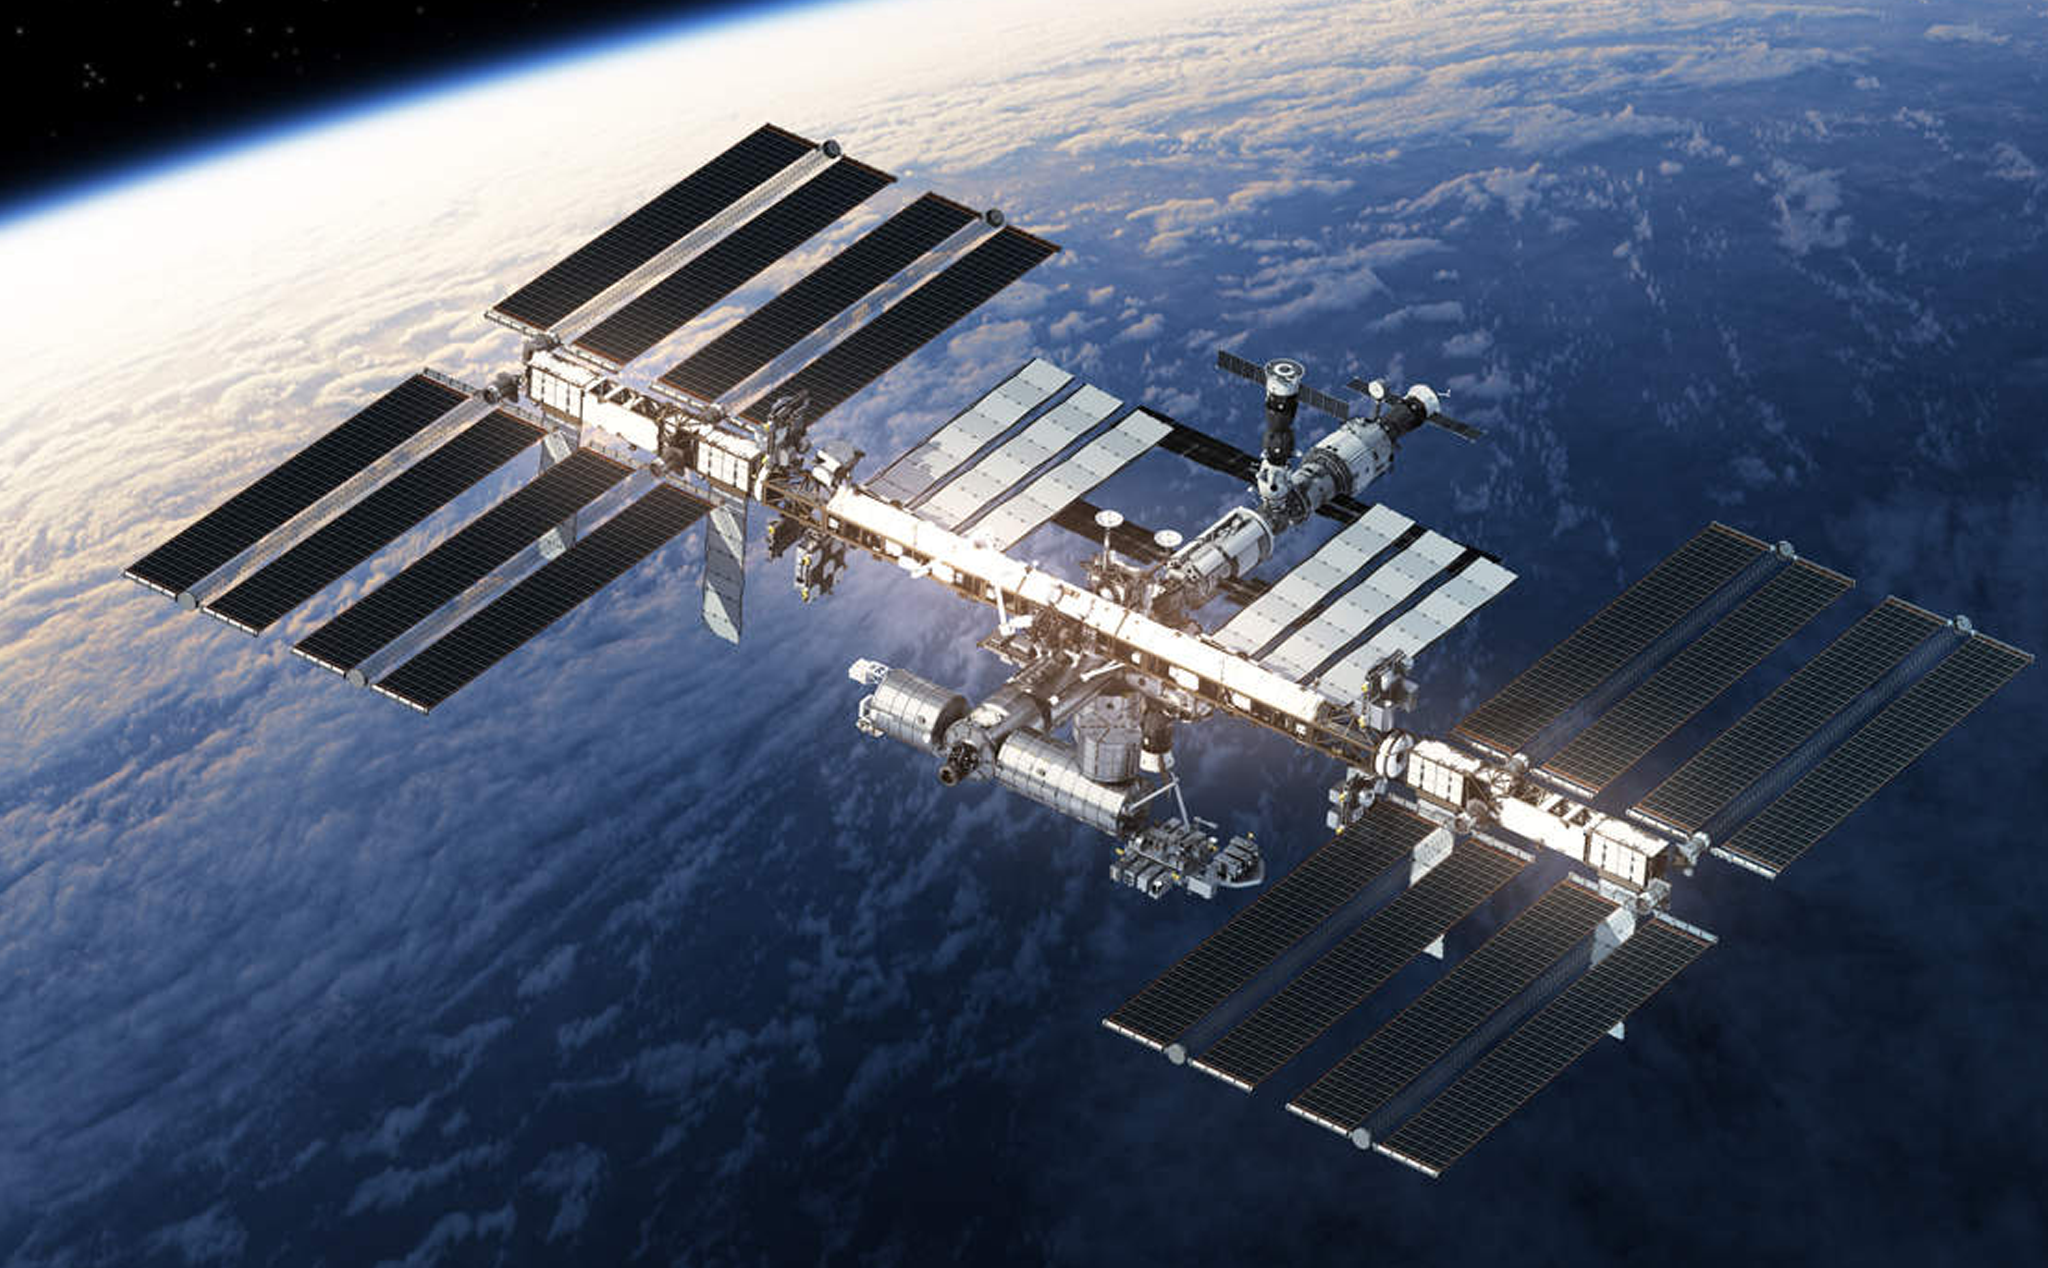 Trạm vũ trụ quốc tế ISS: Được xây dựng lên từ nhiều quốc gia, Trạm vũ trụ quốc tế ISS chính là nơi cư ngụ của các phi hành gia thực hiện các nhiệm vụ khoa học và thám hiểm Vũ trụ. Tham quan bộ sưu tập ảnh về ISS để hình dung được cuộc sống và nhiệm vụ của những vị khách đặc biệt trên Trạm vũ trụ này.